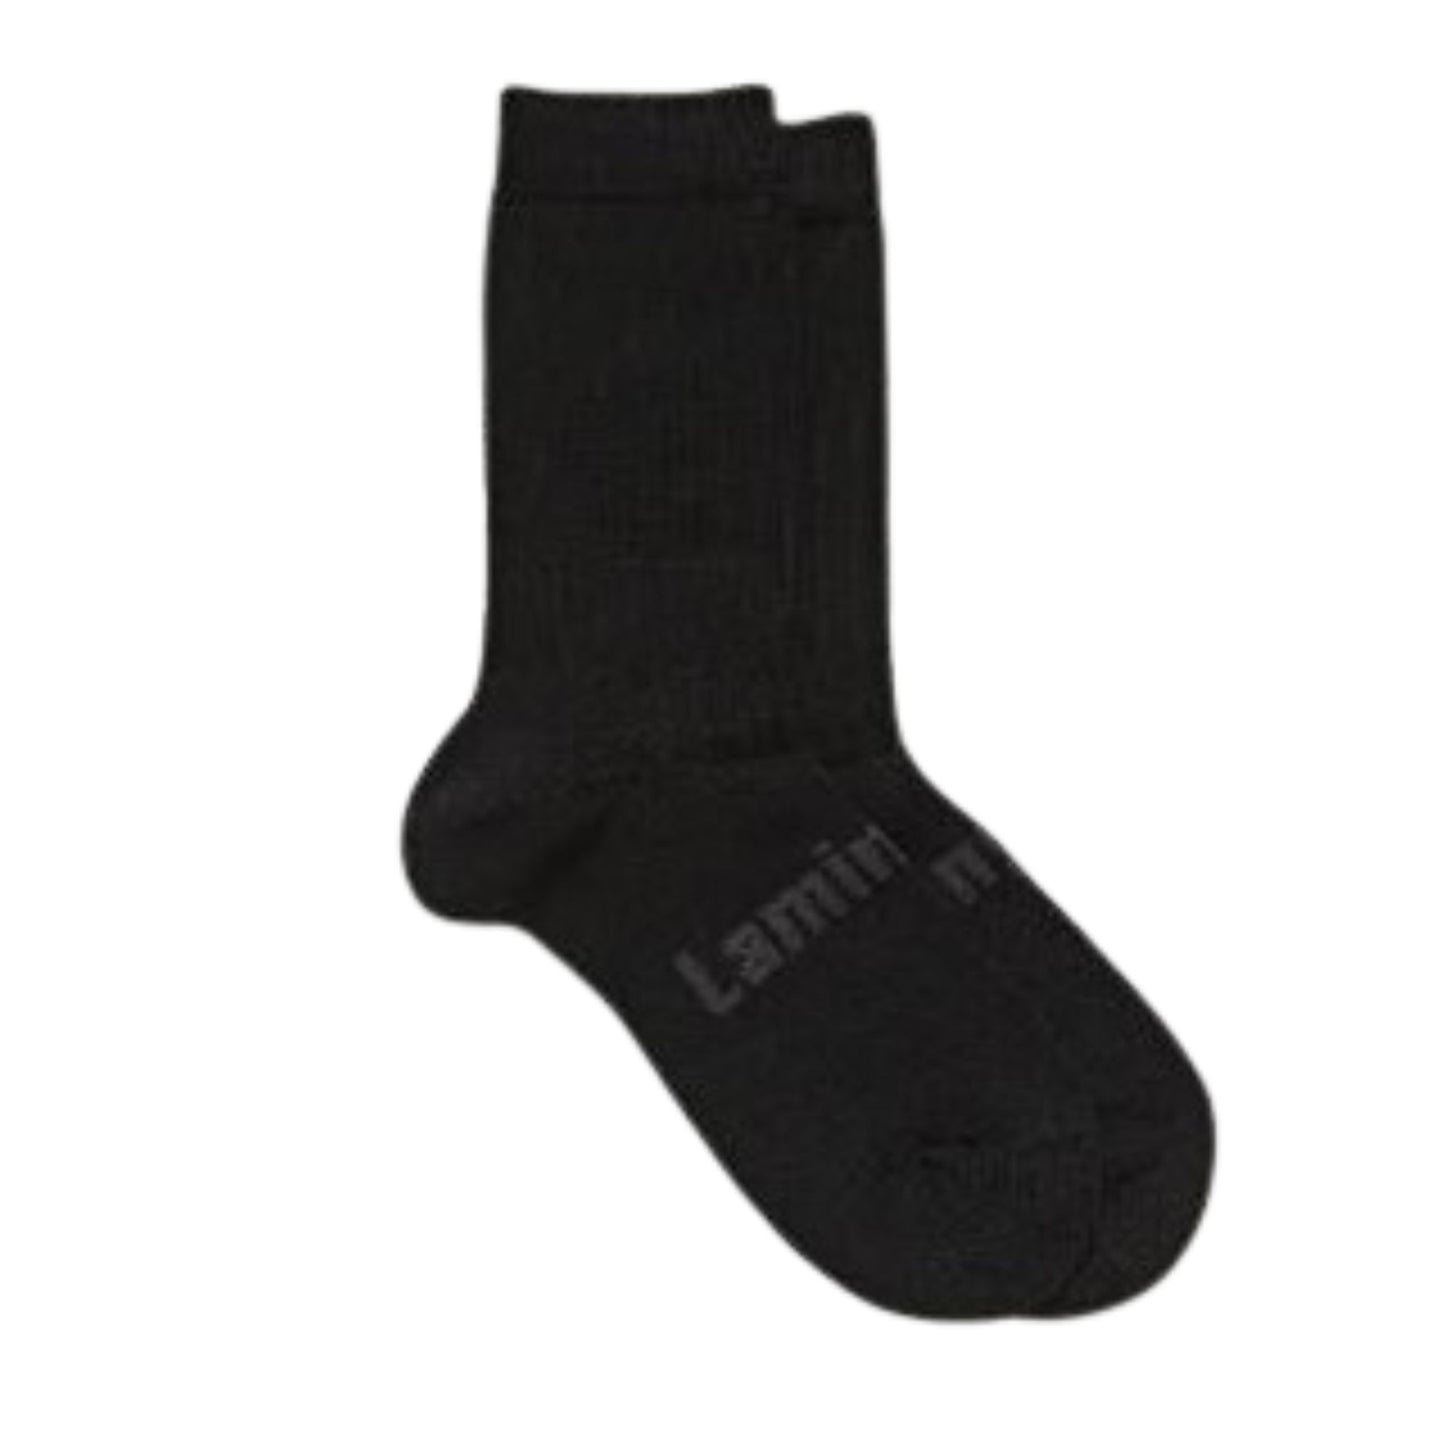 Black ribbed merino socks